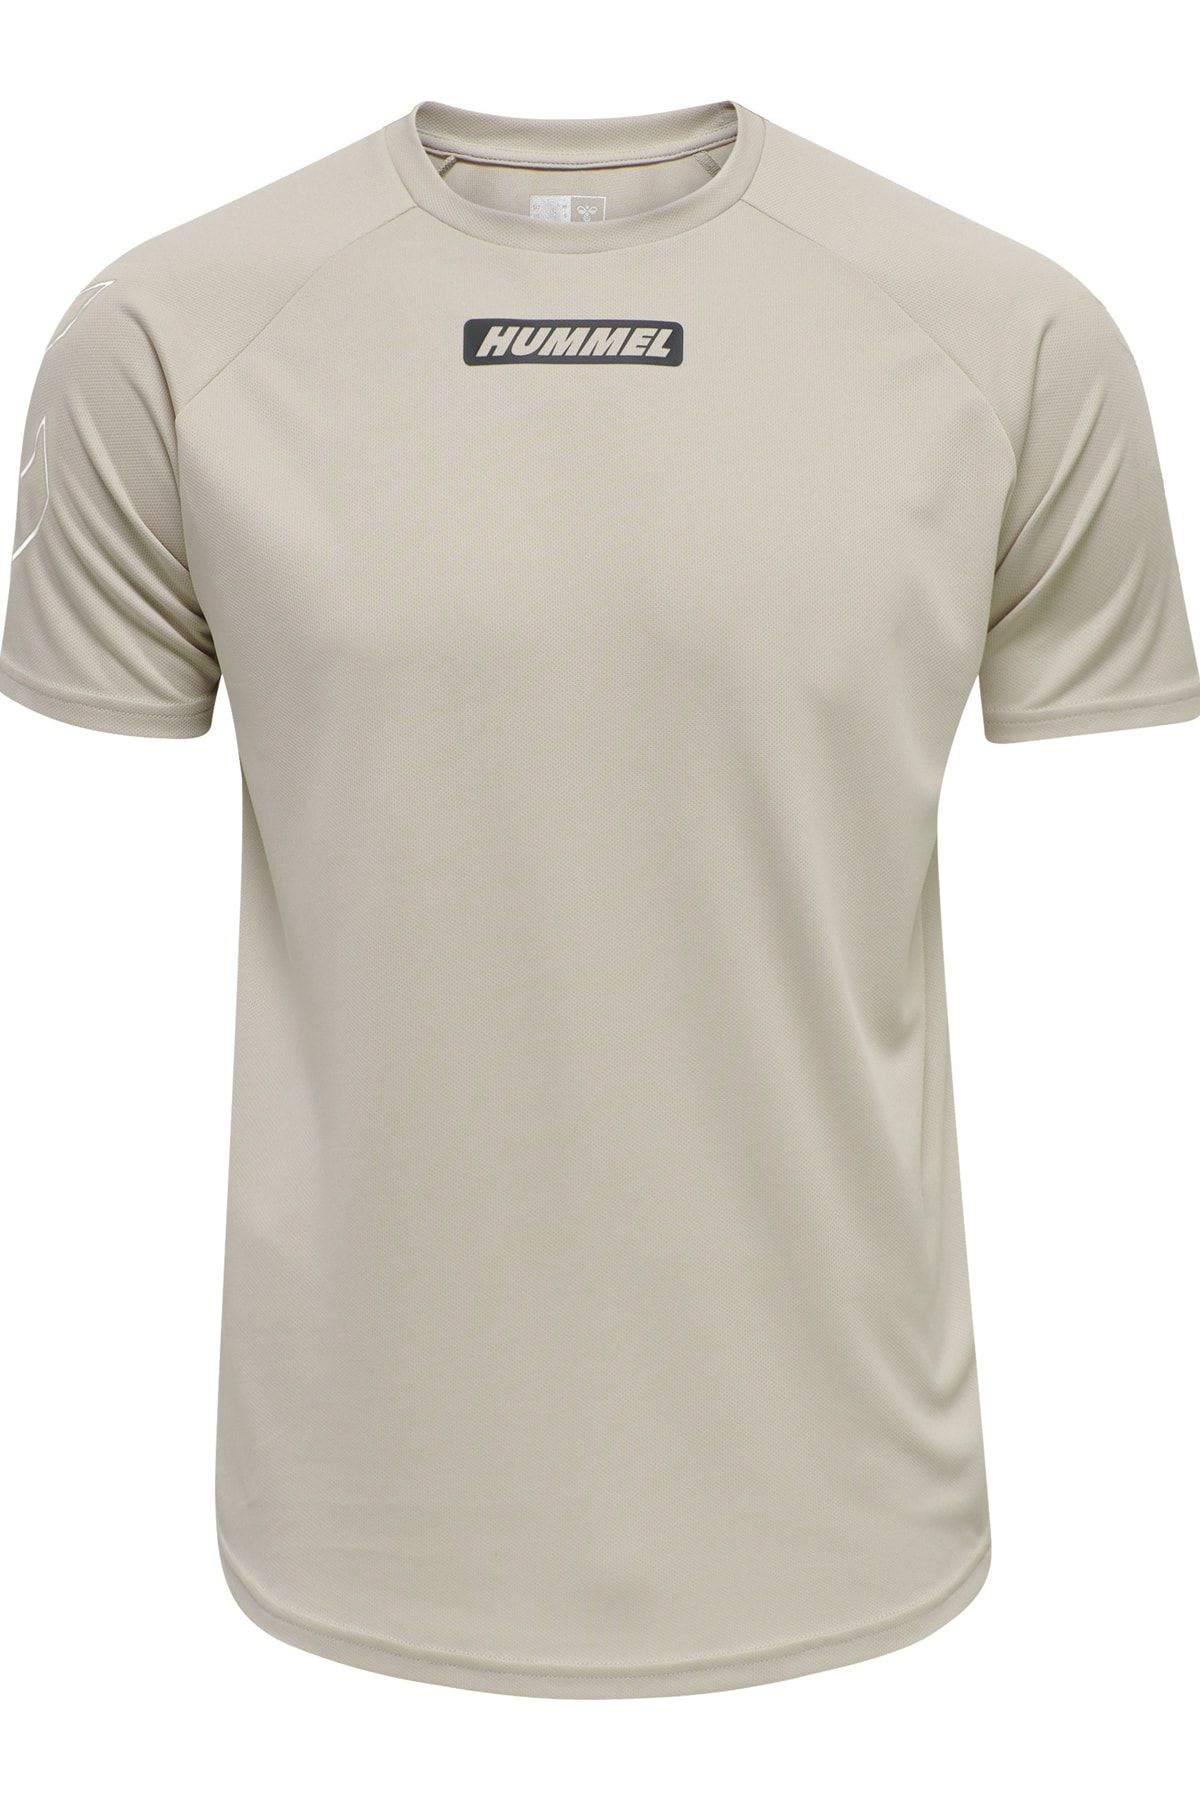 HUMMEL T-Shirt - Beige - Regular Trendyol - fit